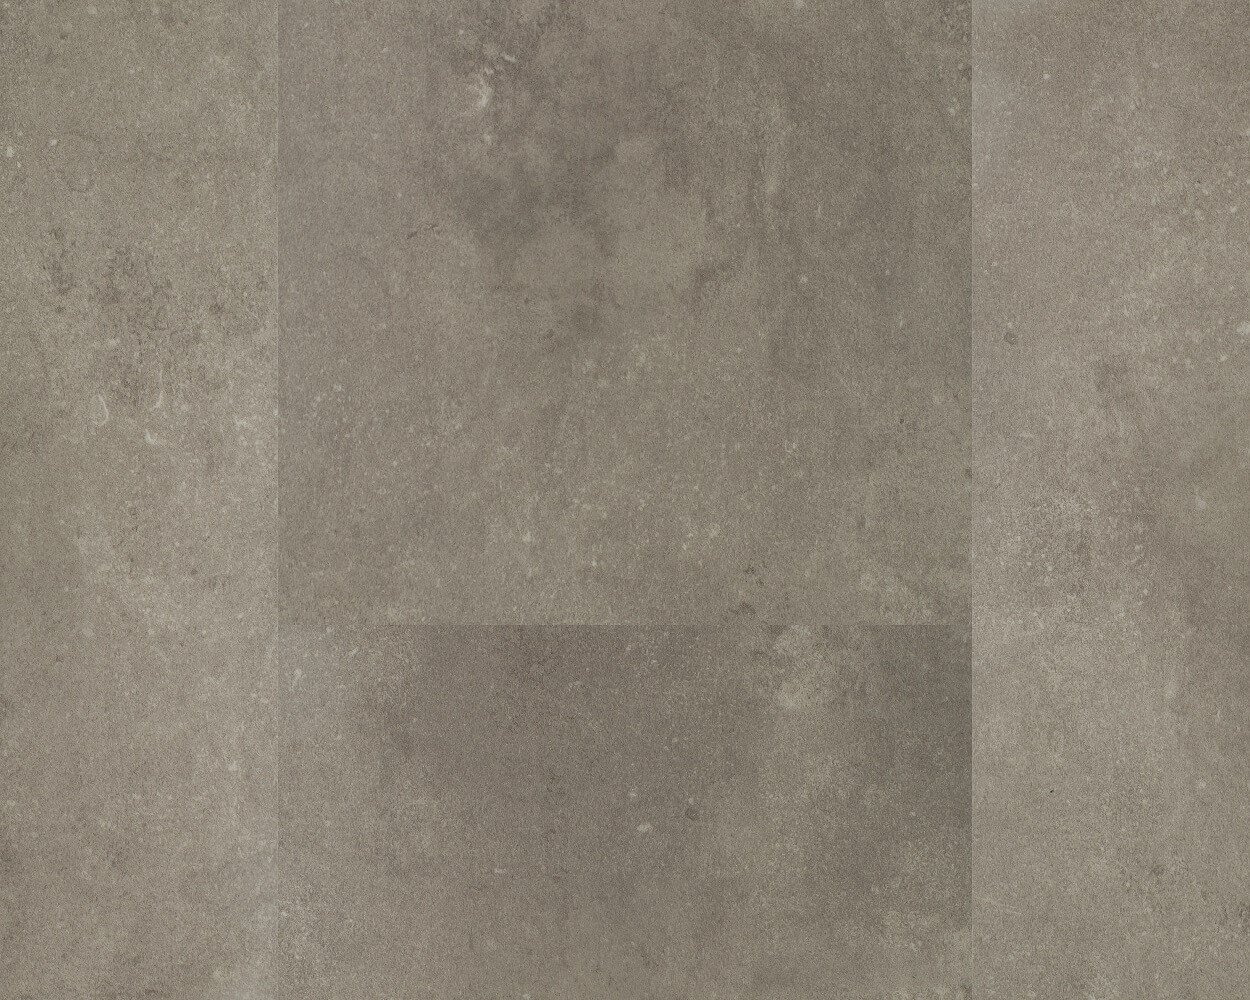 vinilinė danga betono imitacija Hebeta 11283/38211/57211